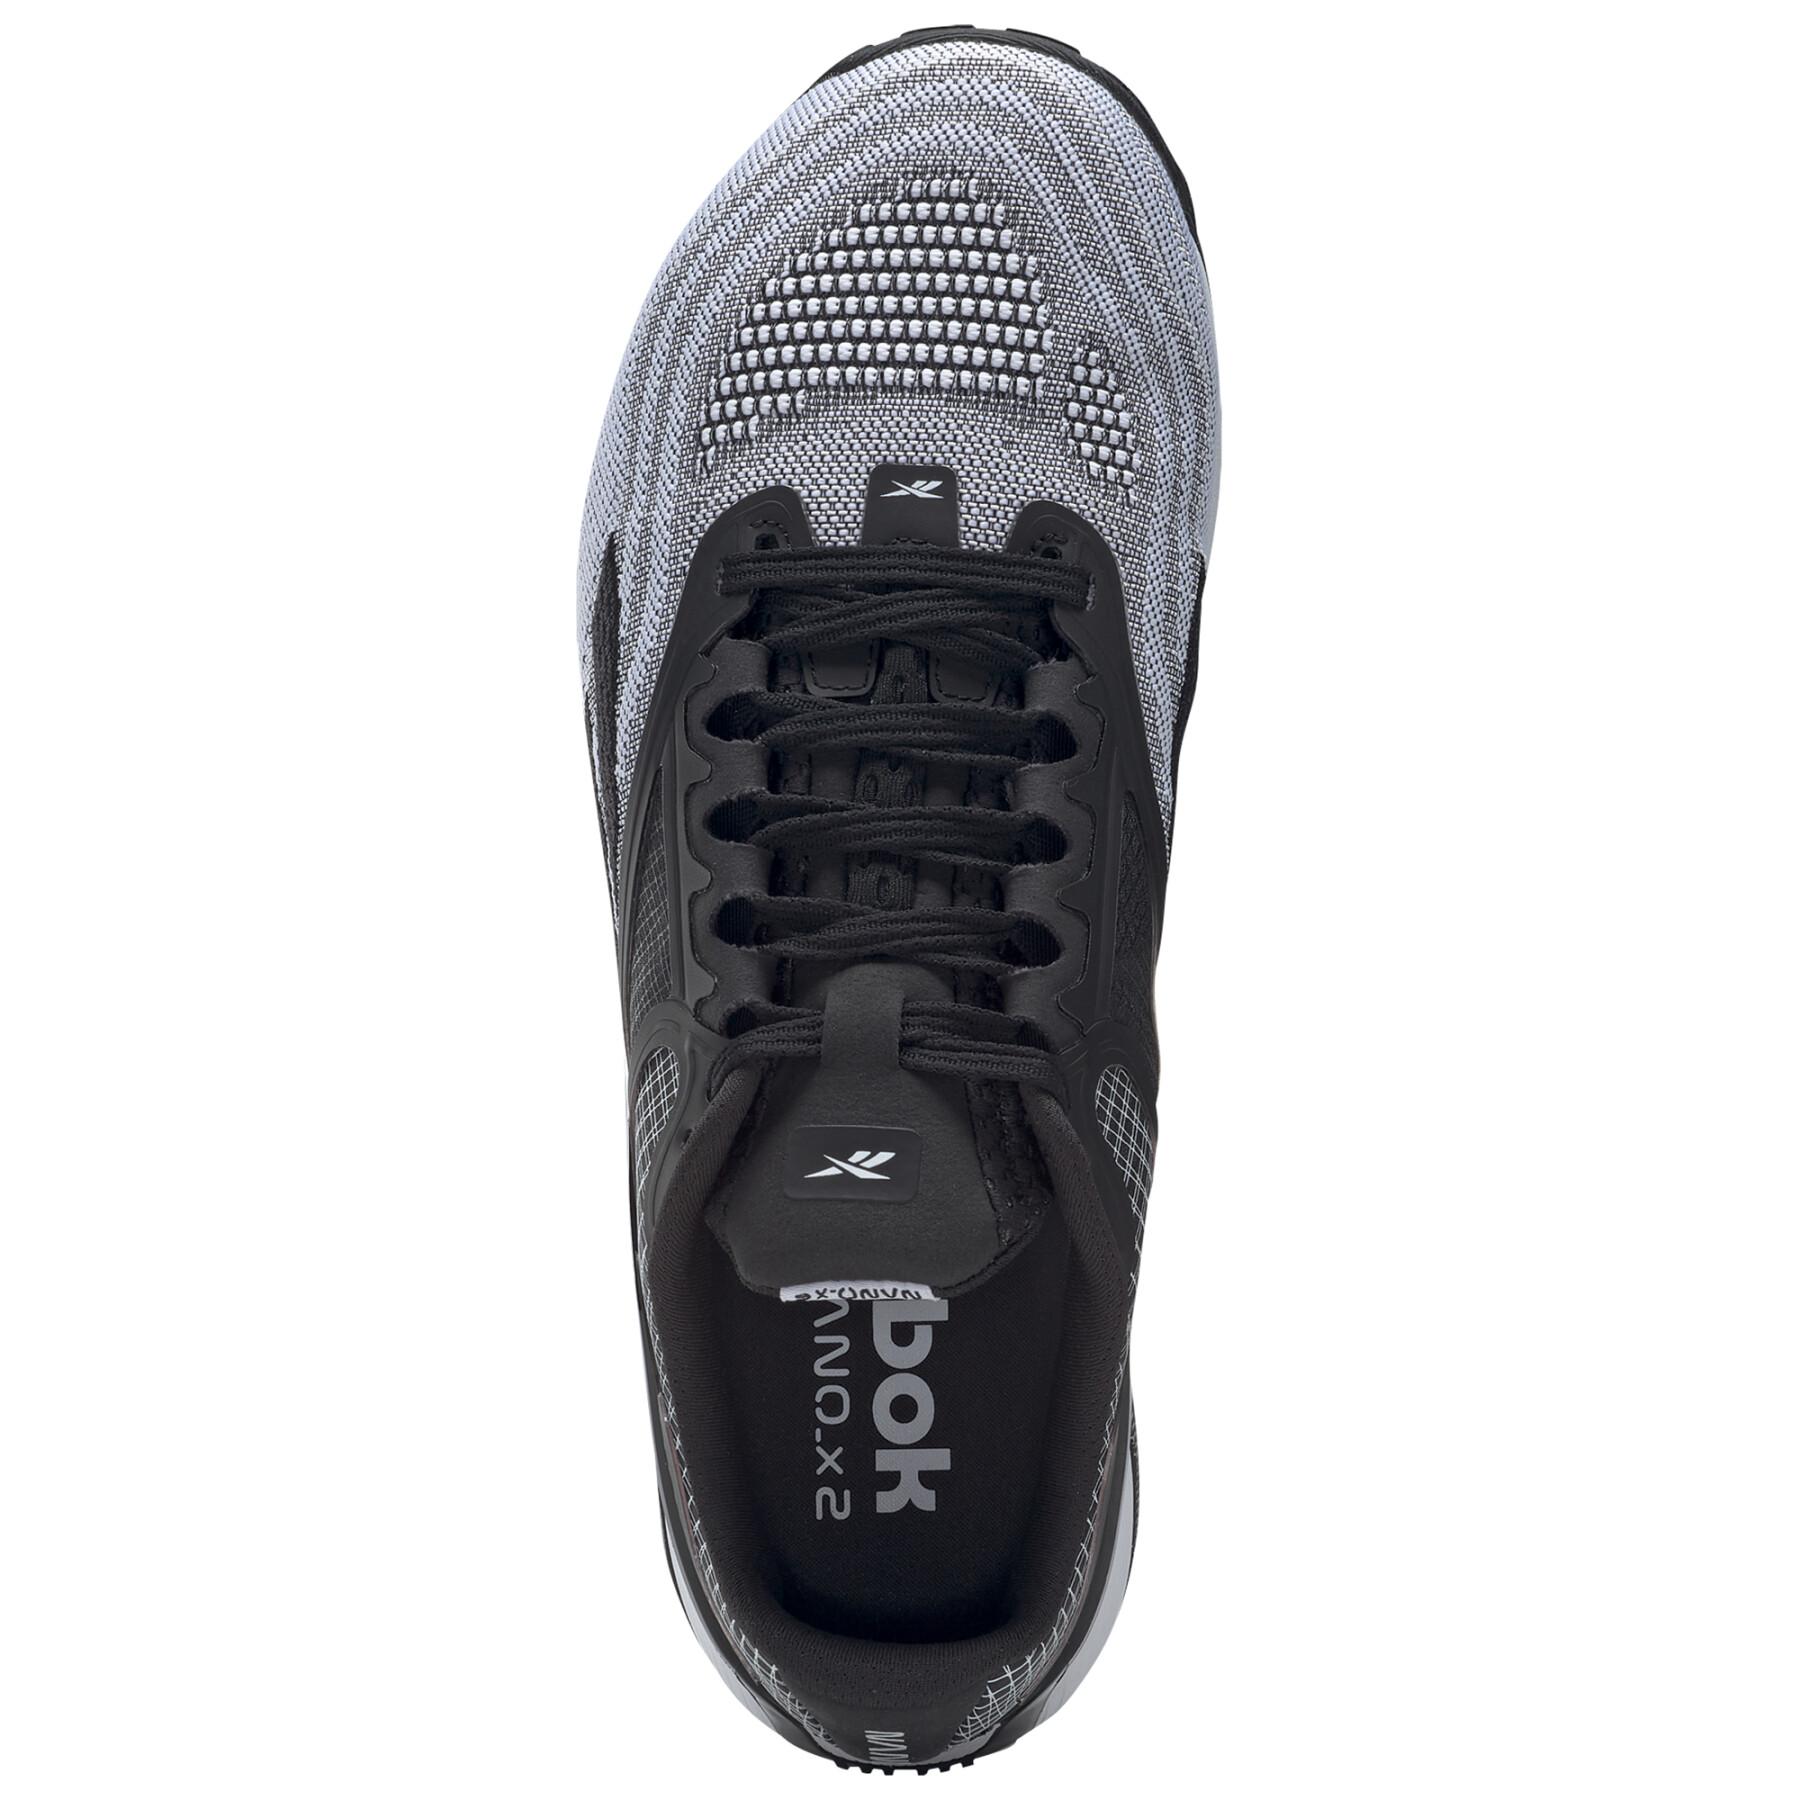 Schuhe Reebok Nano X2